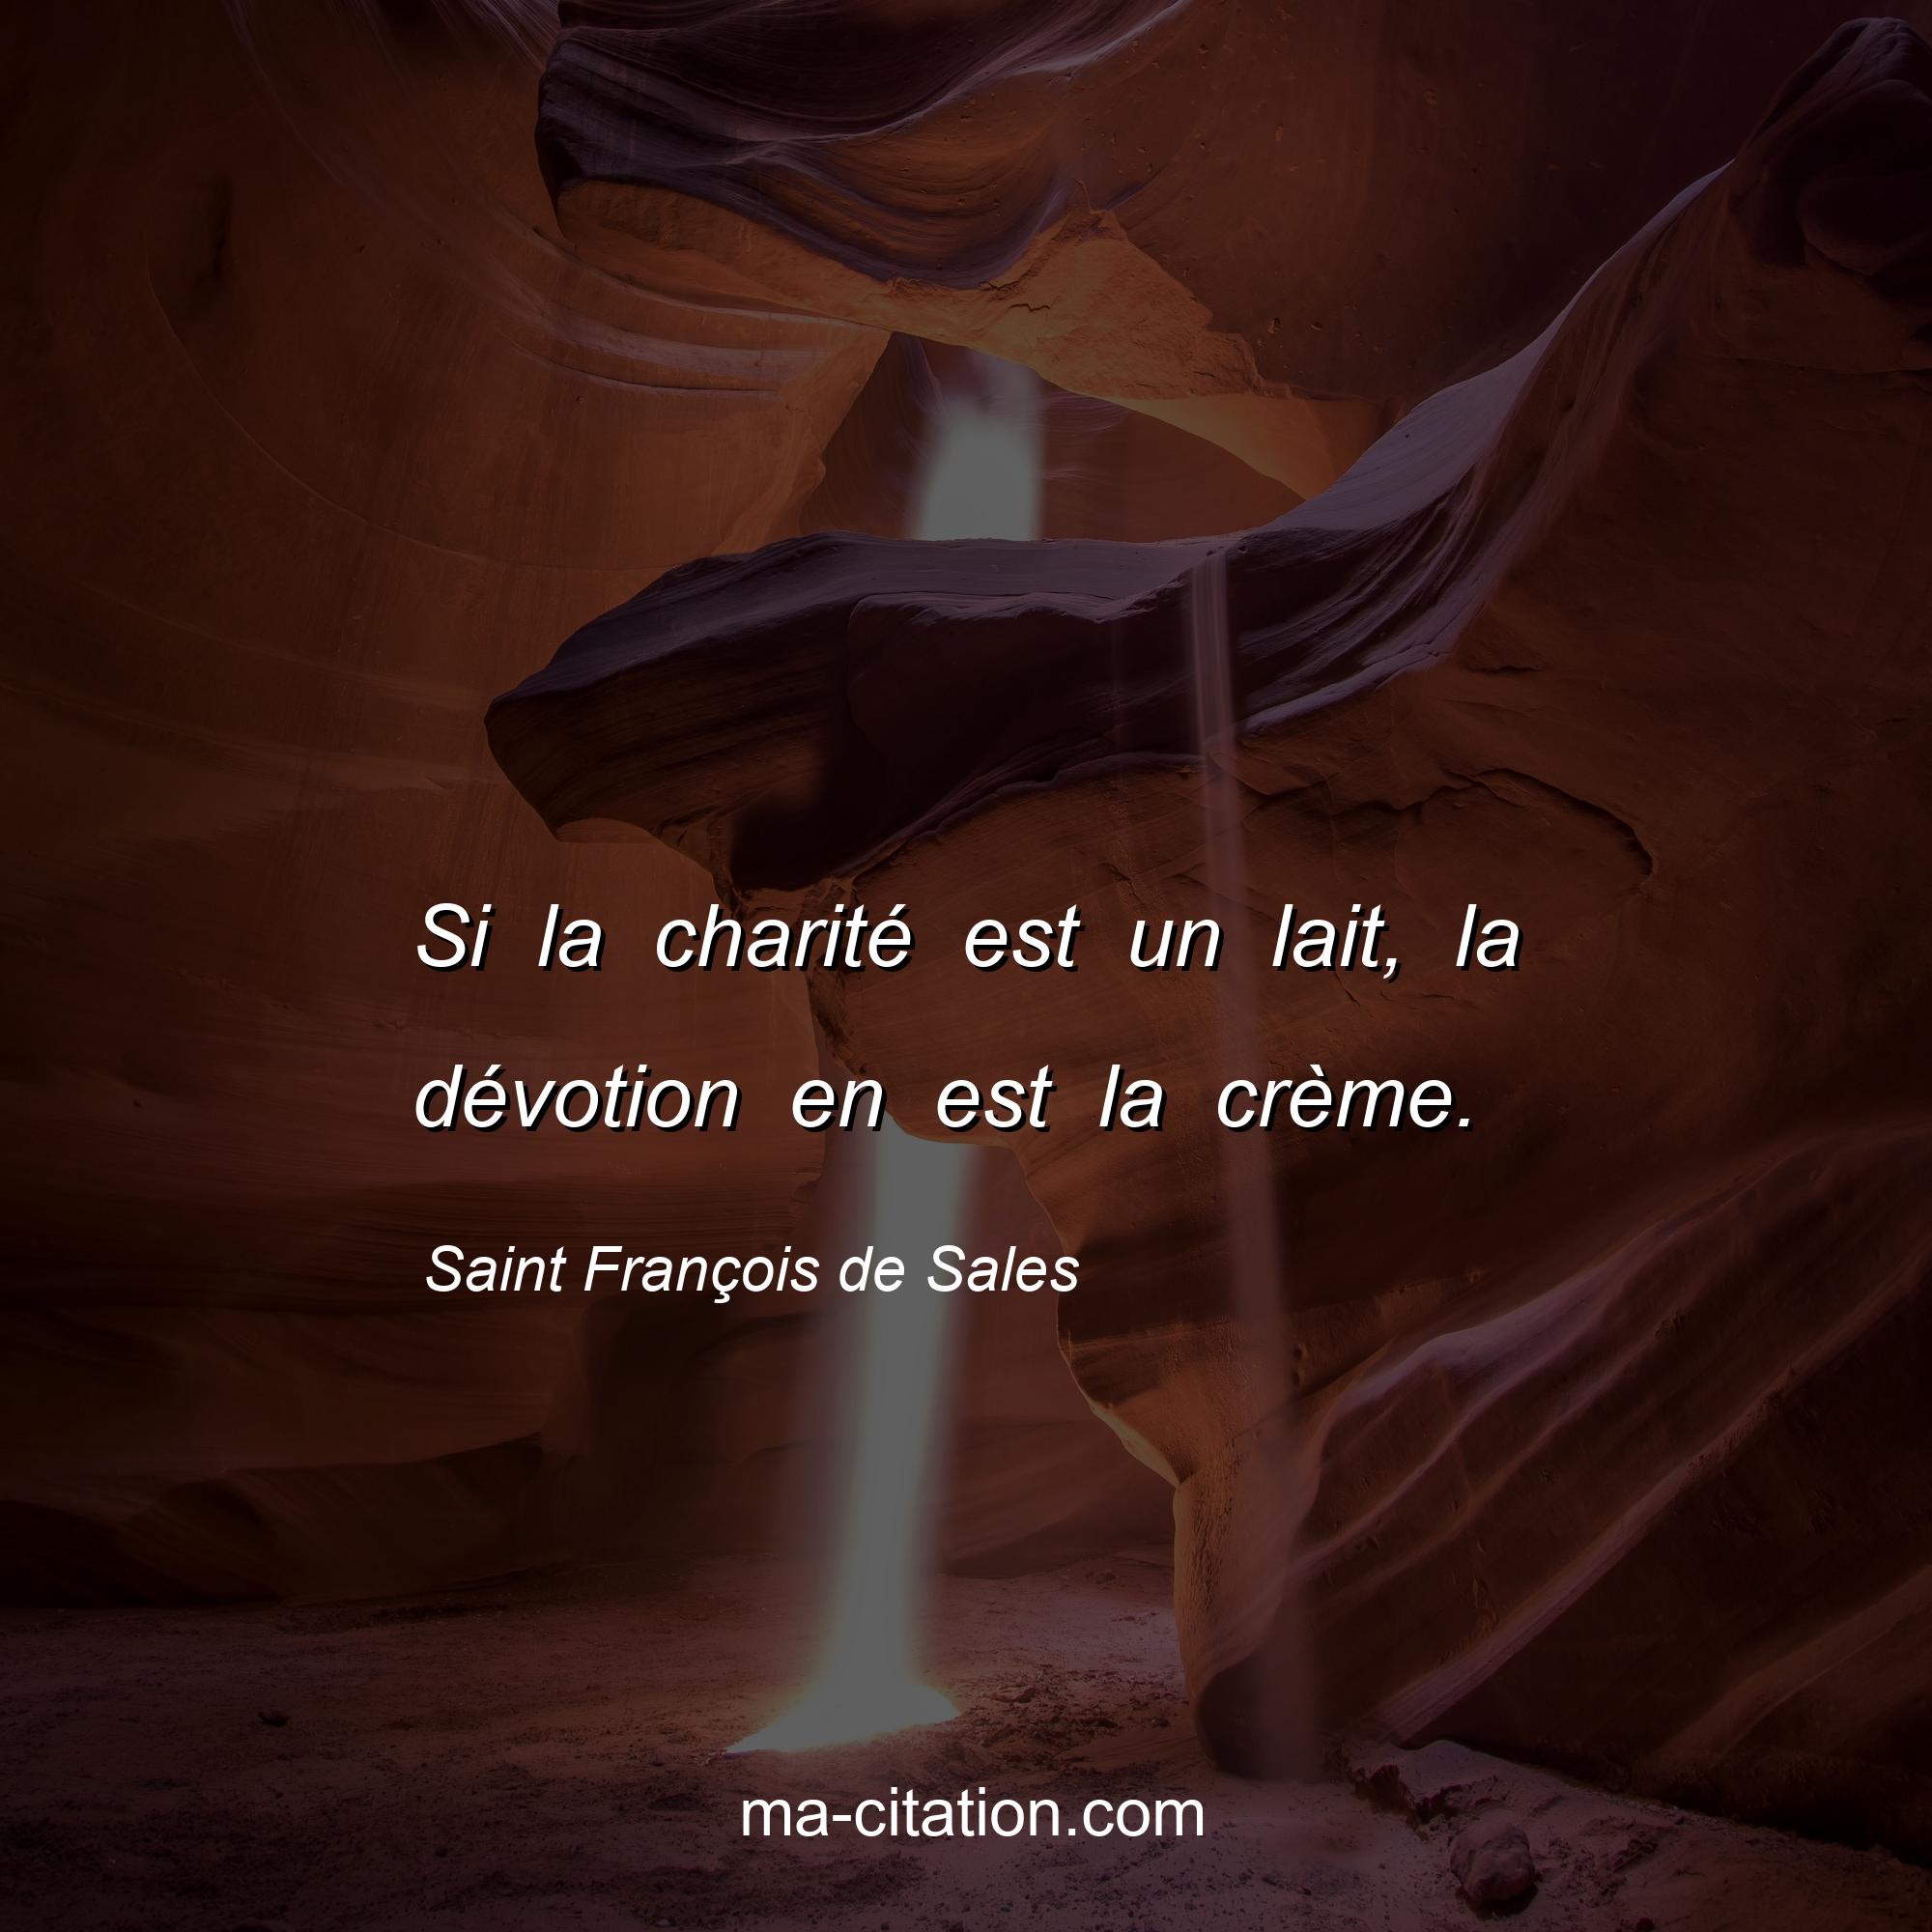 Saint François de Sales : Si la charité est un lait, la dévotion en est la crème.